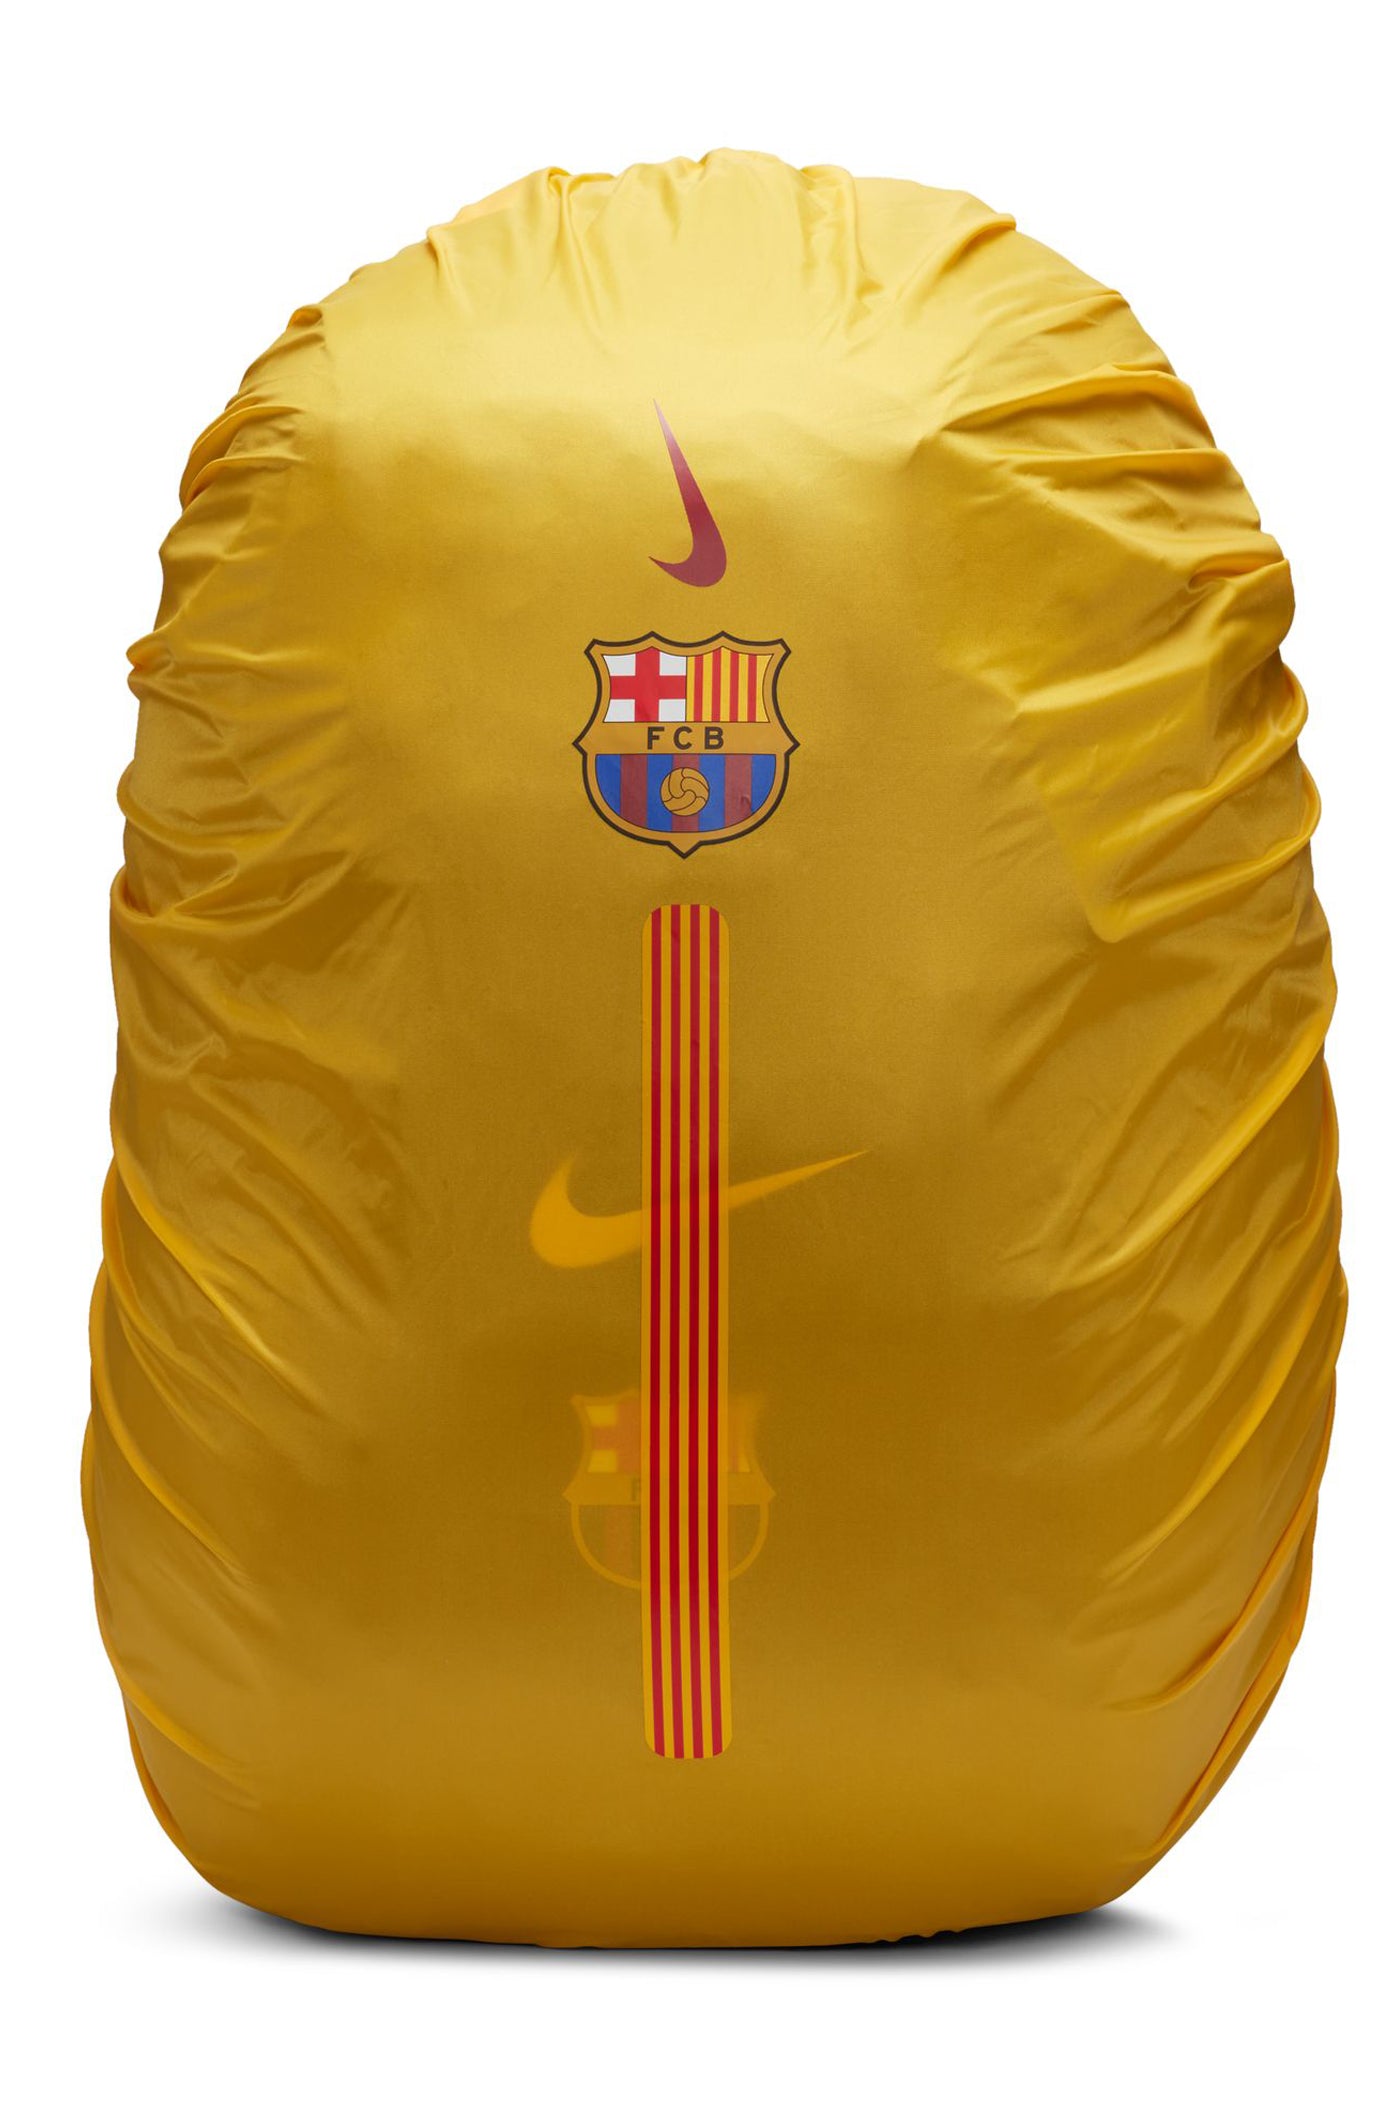 Backpack Black Barça Nike